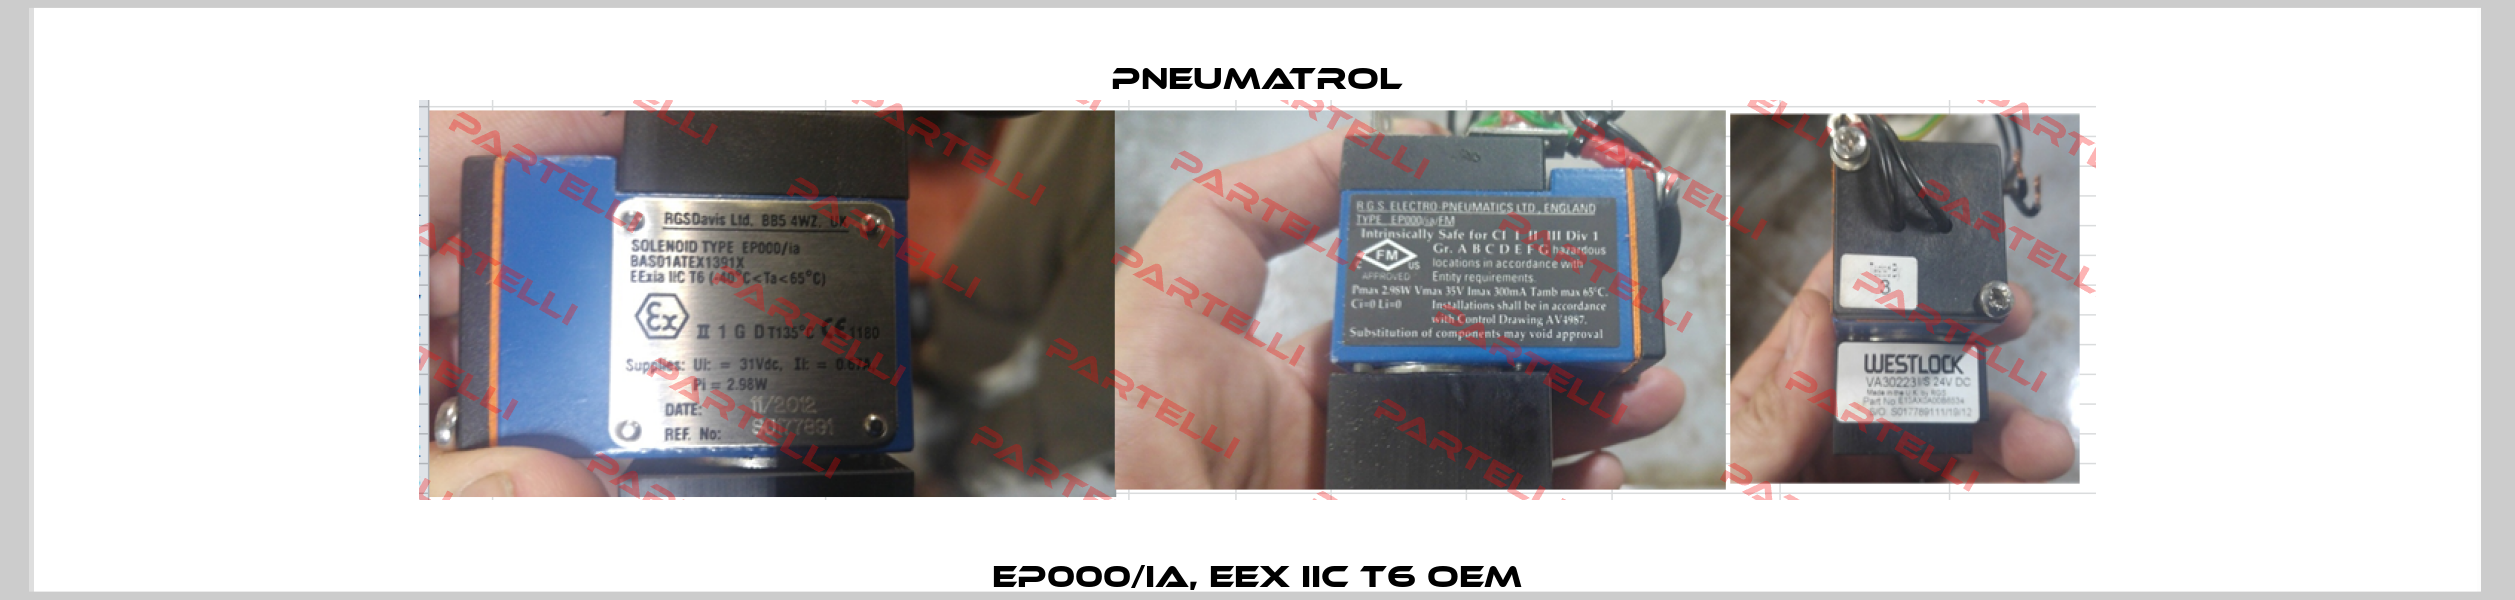 EP000/ia, EEx IIC T6 OEM Pneumatrol